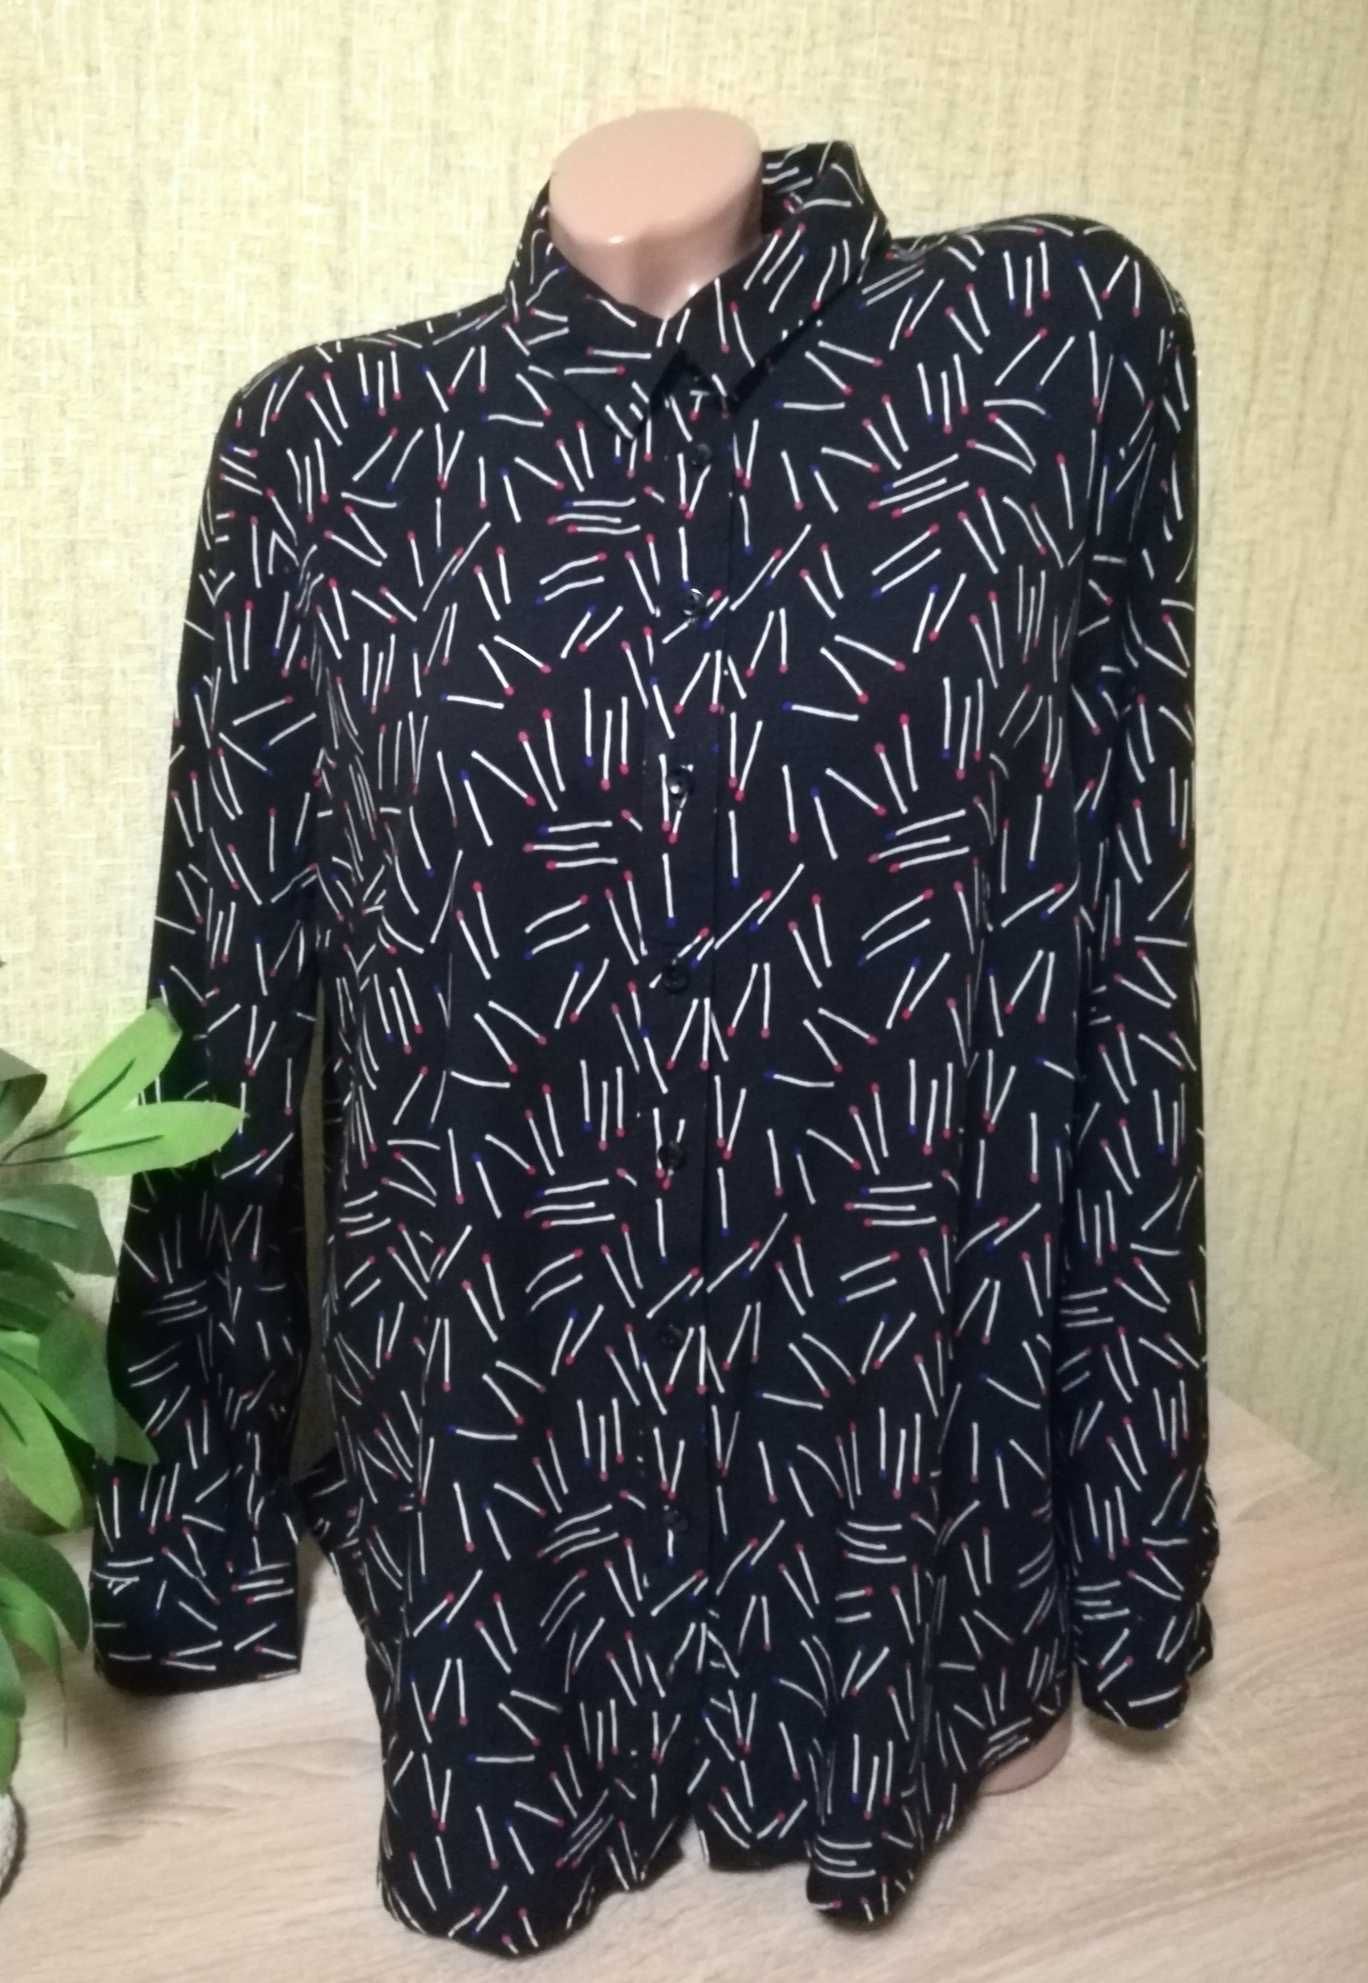 Замечательная новая блуза, рубашка в принт из вискозы р-р 54-56